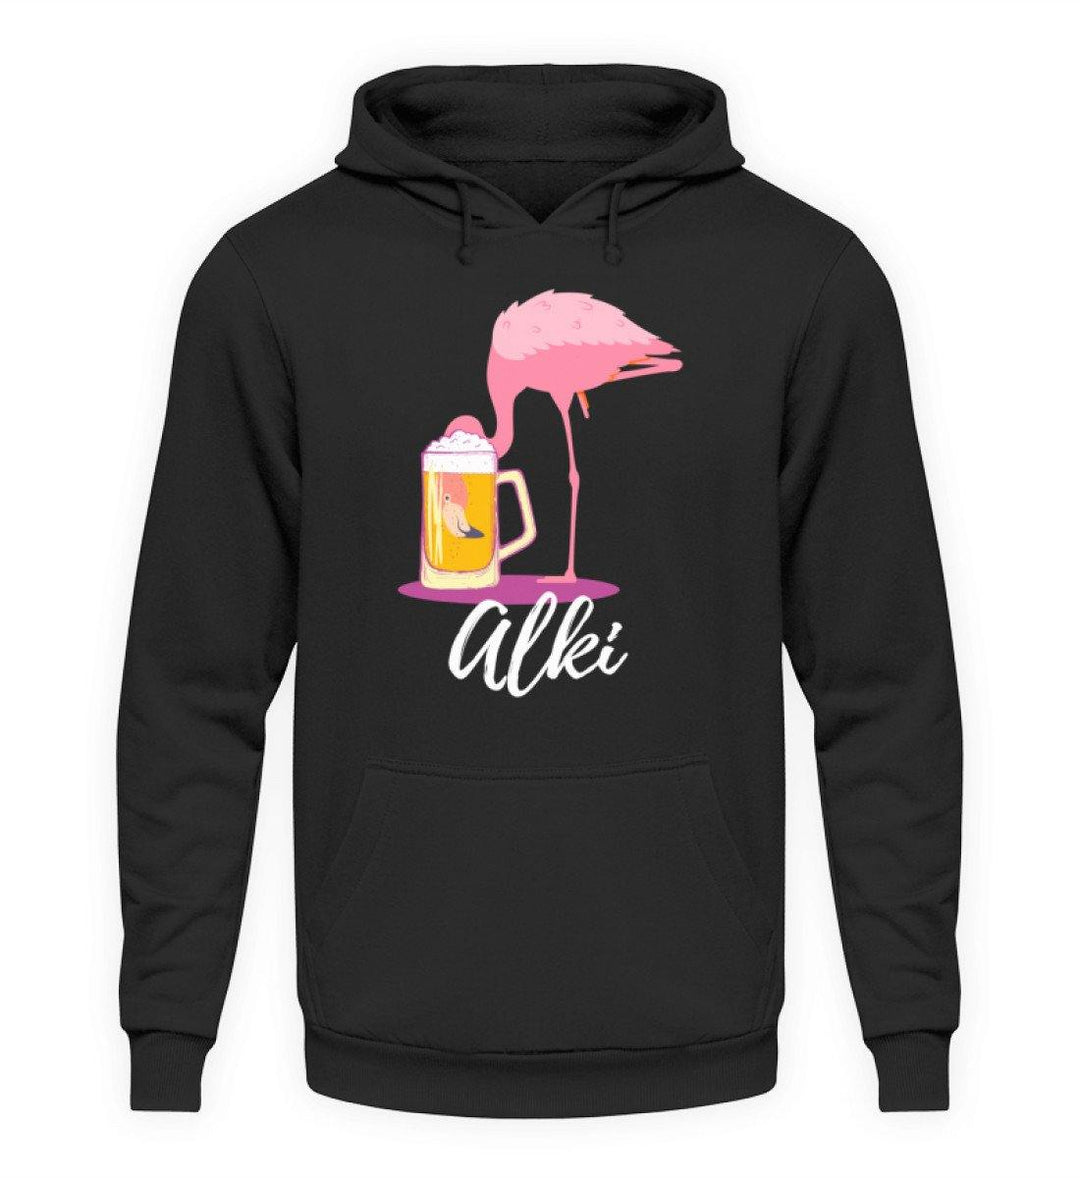 Flamingo Alki - Words on Shirt  - Unisex Kapuzenpullover Hoodie - Words on Shirts Sag es mit dem Mittelfinger Shirts Hoodies Sweatshirt Taschen Gymsack Spruch Sprüche Statement